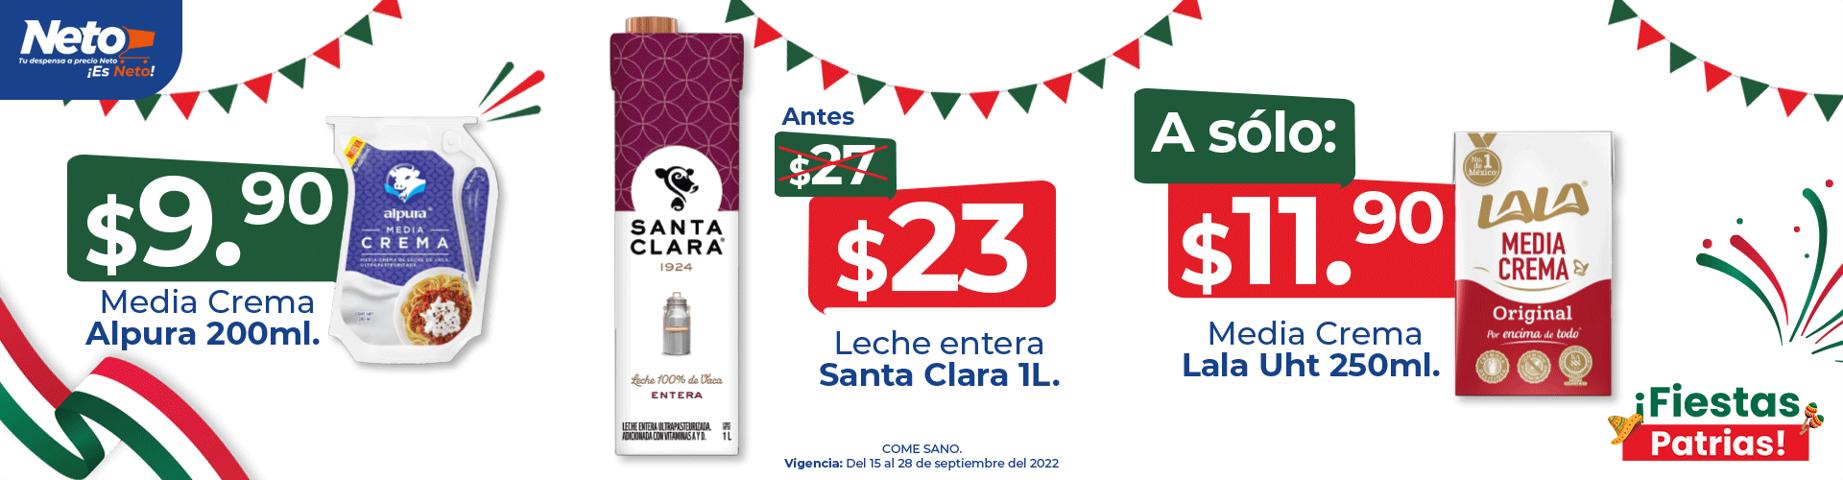 Ofertas de Hiper-Supermercados en Tonalá (Jalisco) | Ofertas Tiendas Neto de Tiendas Neto | 15/9/2022 - 28/9/2022